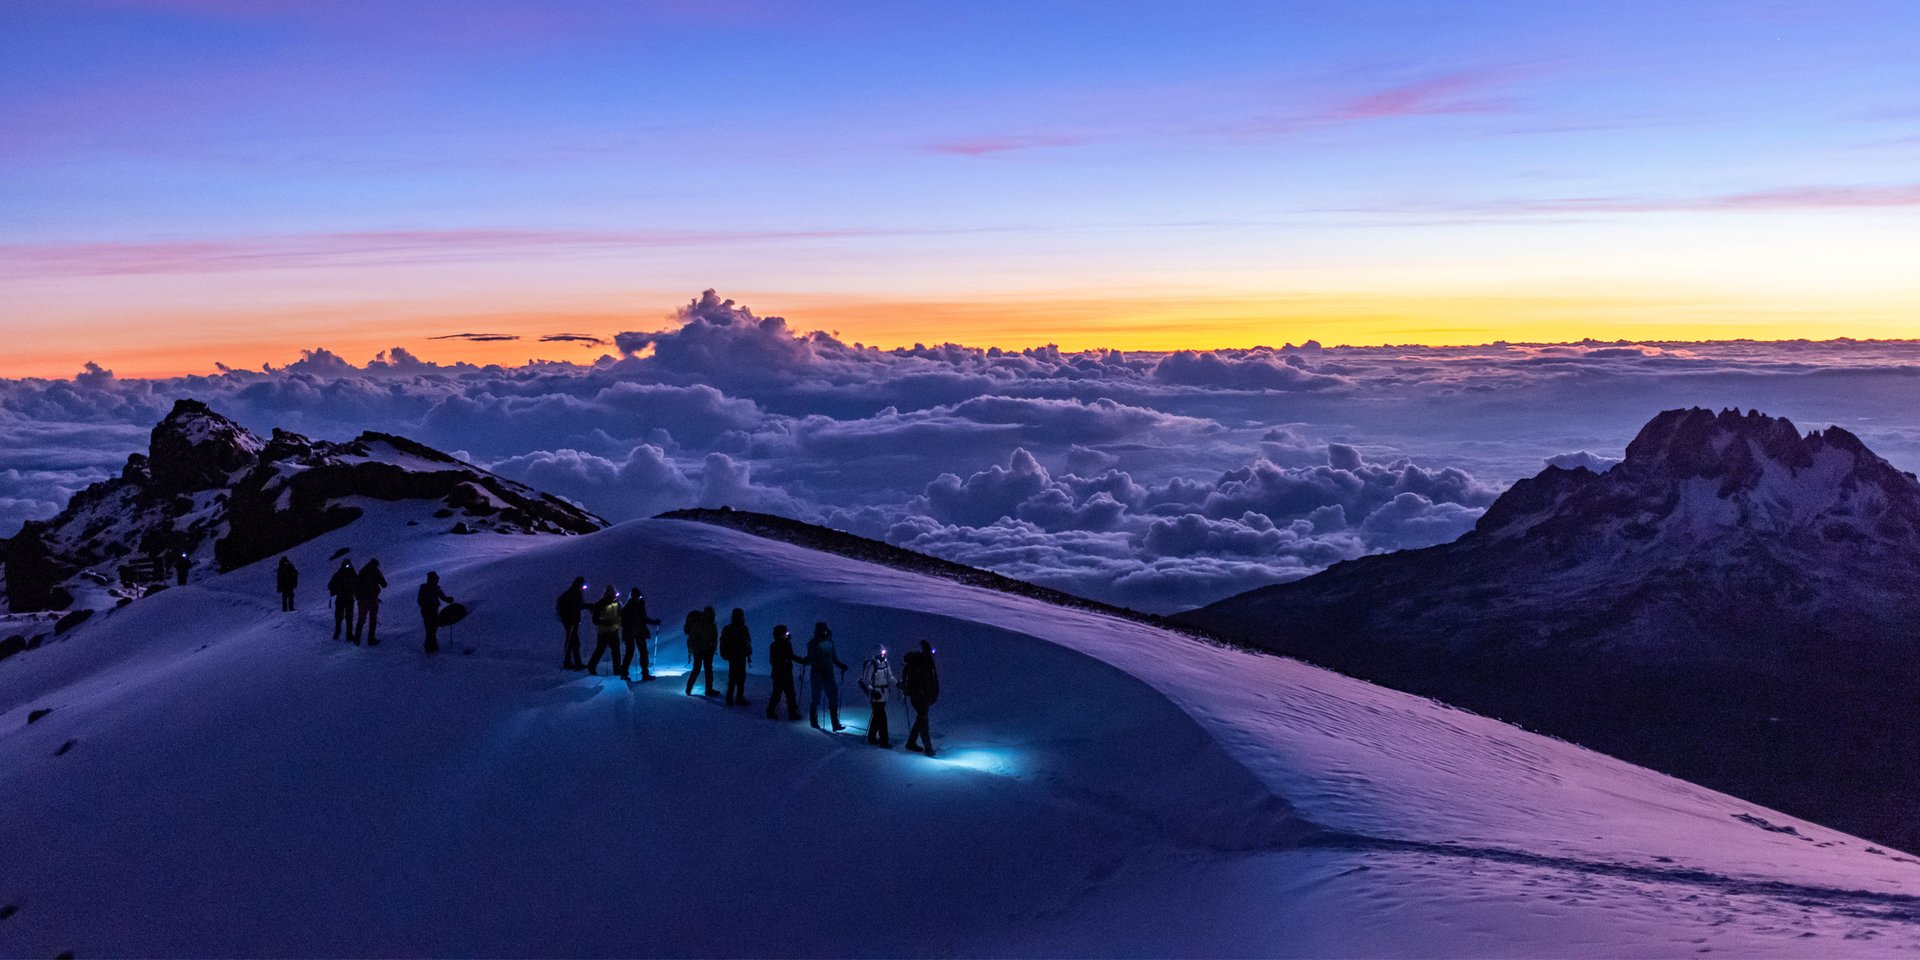 hike Mount Kilimanjaro in this Tanzania Tour